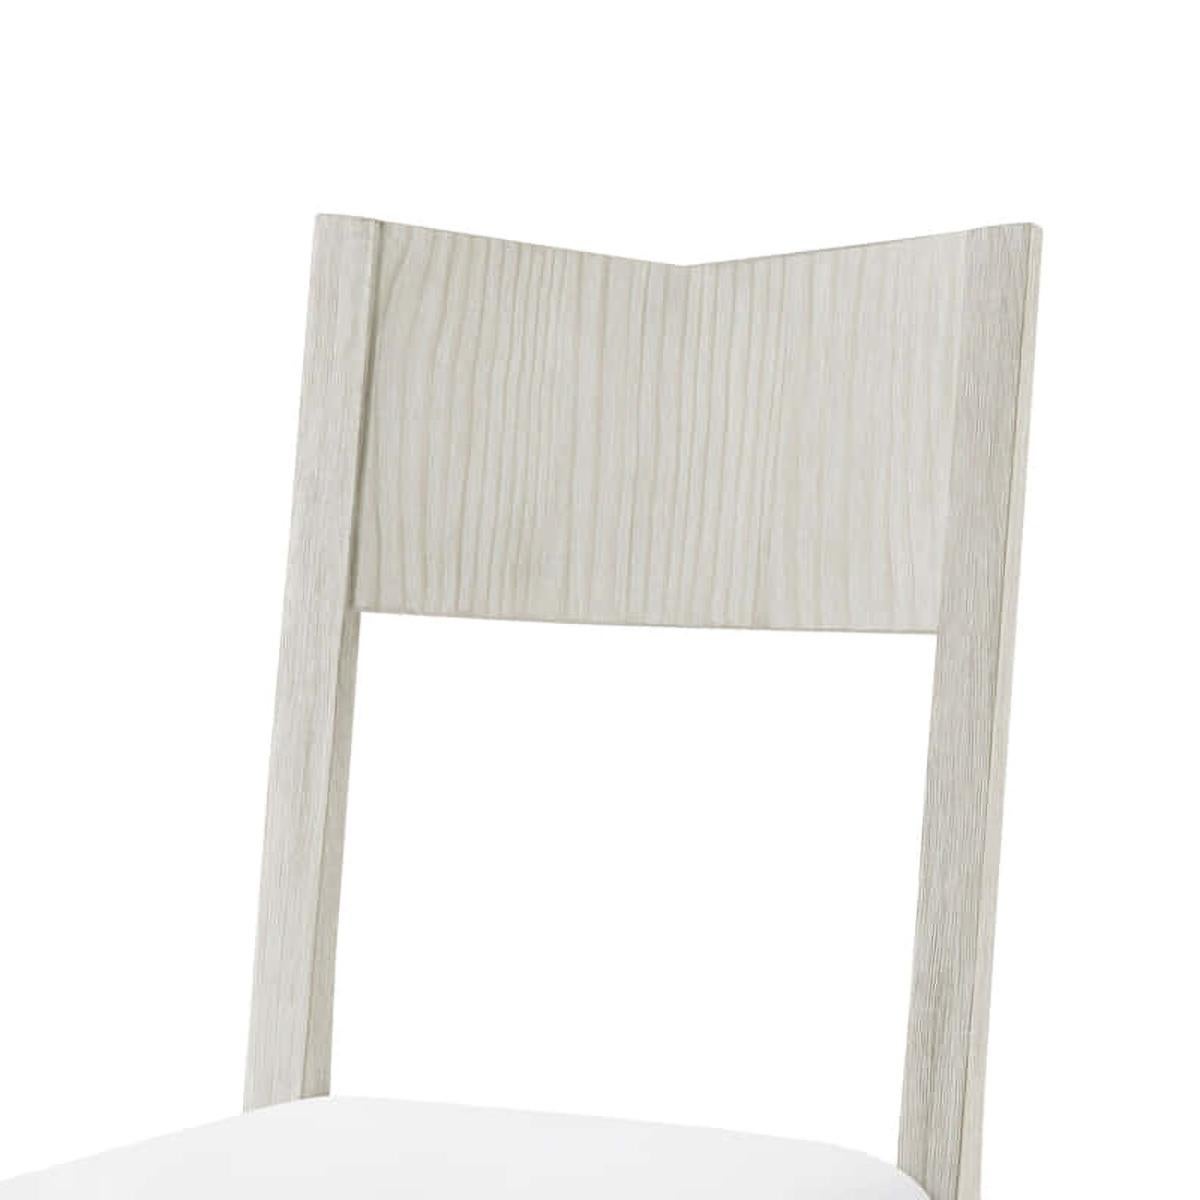 Moderner, lackierter Esszimmerstuhl mit abgeschrägter Rückenlehne und unglaublich bequemer Sitzfläche, gefertigt aus drahtgebürstetem, gebranntem Kiefernholz in unserem Sea Salt Finish.

Abmessungen: 20.5